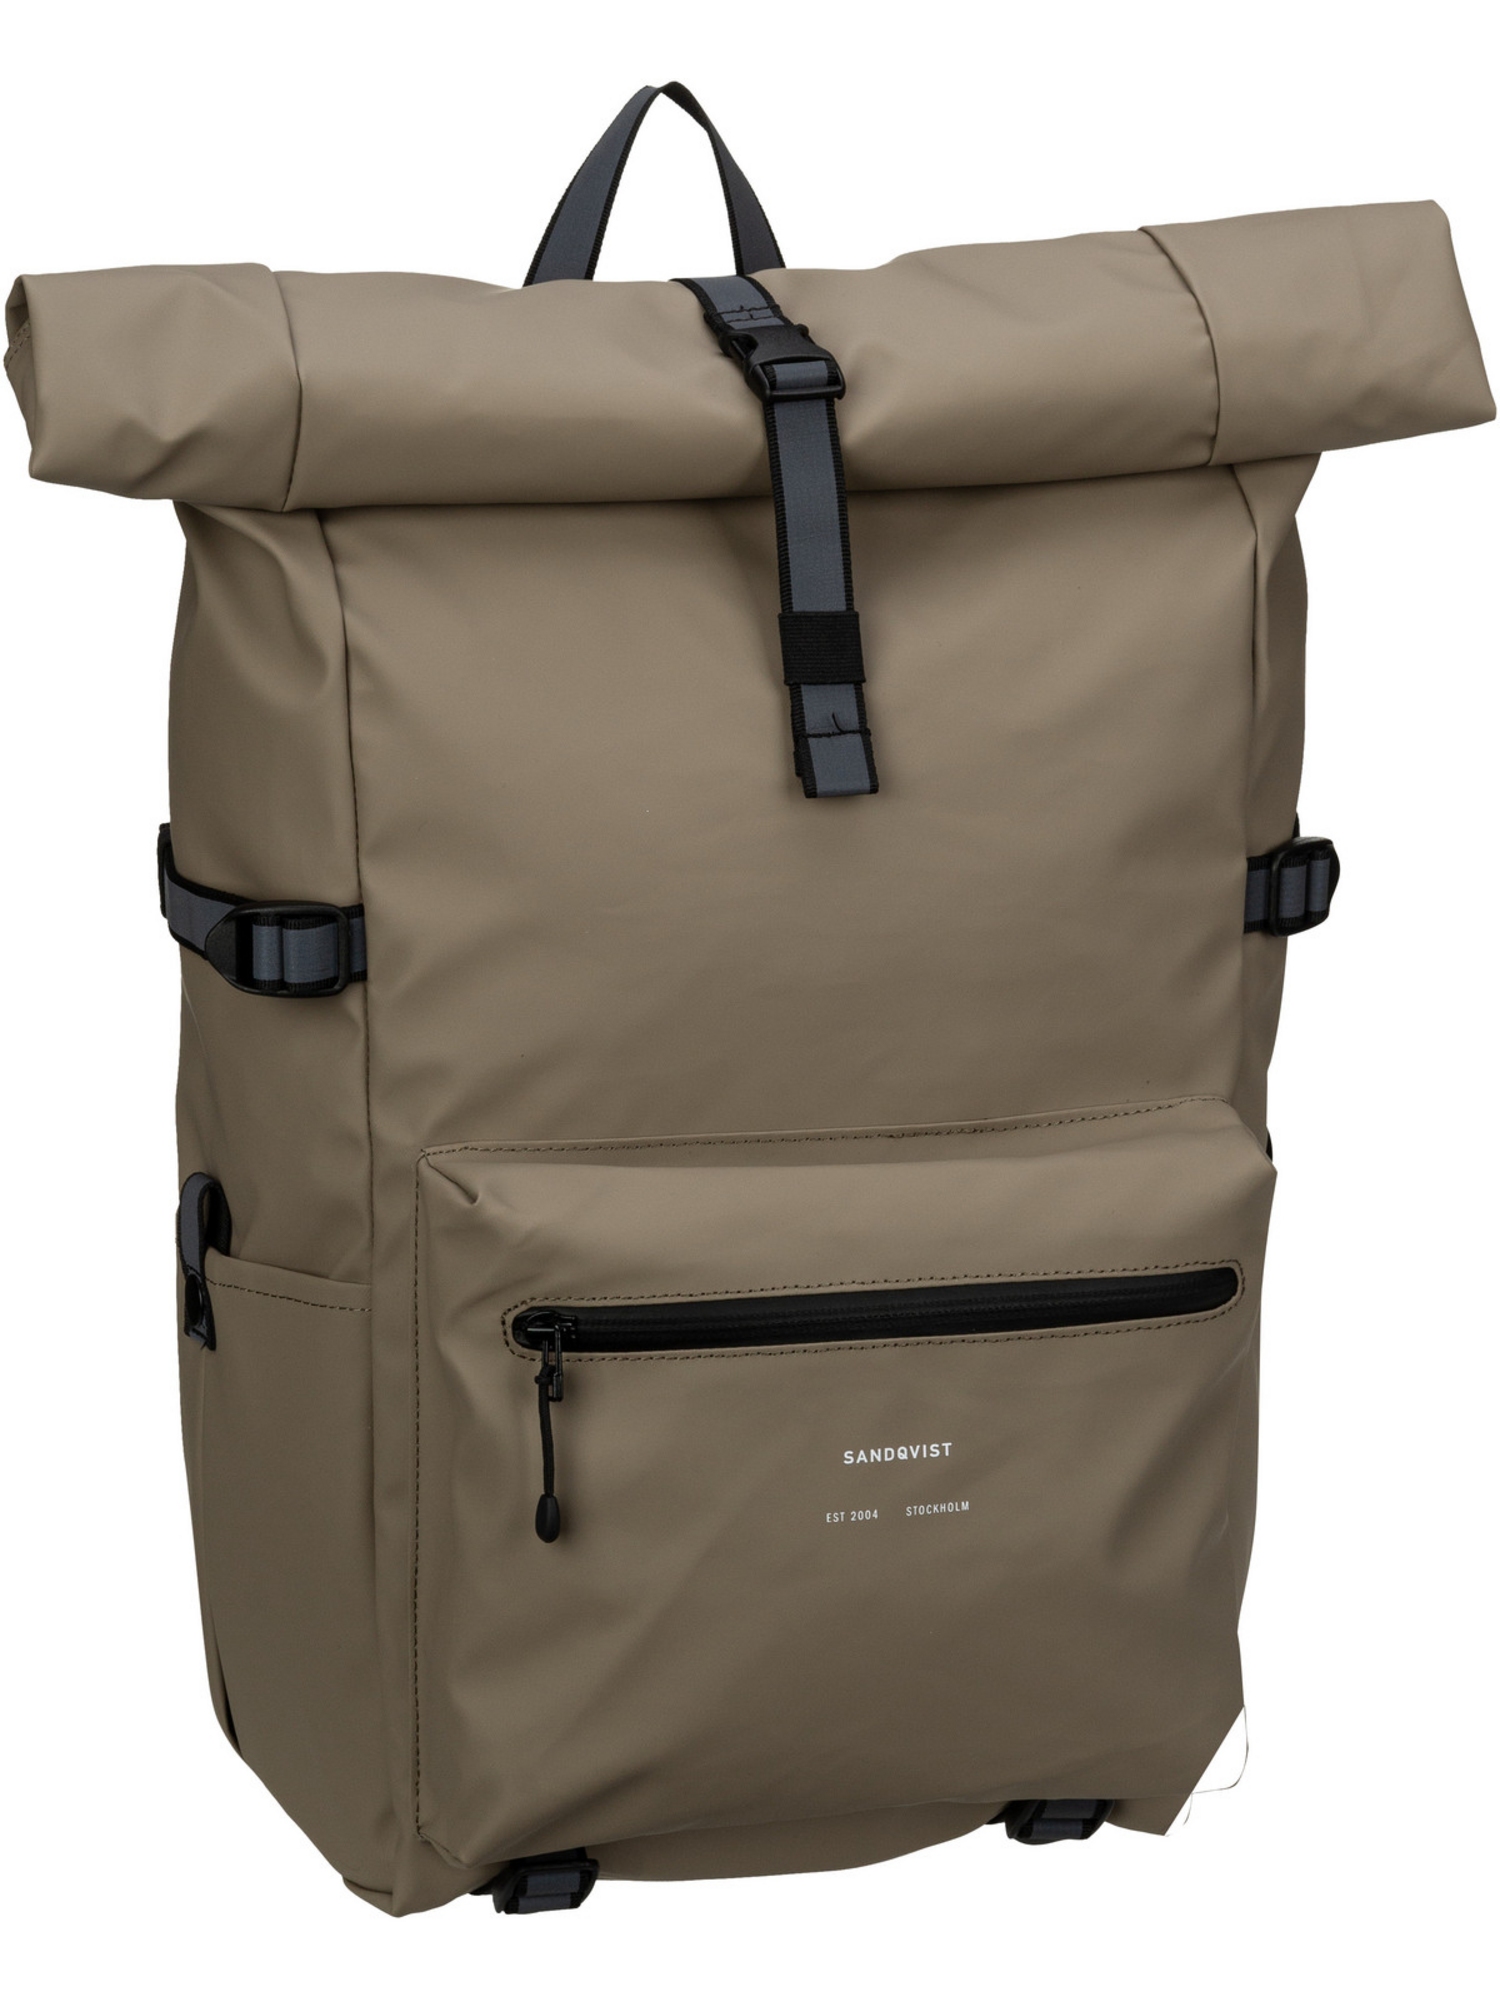 Рюкзак SANDQVIST/Backpack Ruben 2.0 Rolltop, цвет Fossil рюкзак sandqvist backpack ilon rolltop backpack темно синий